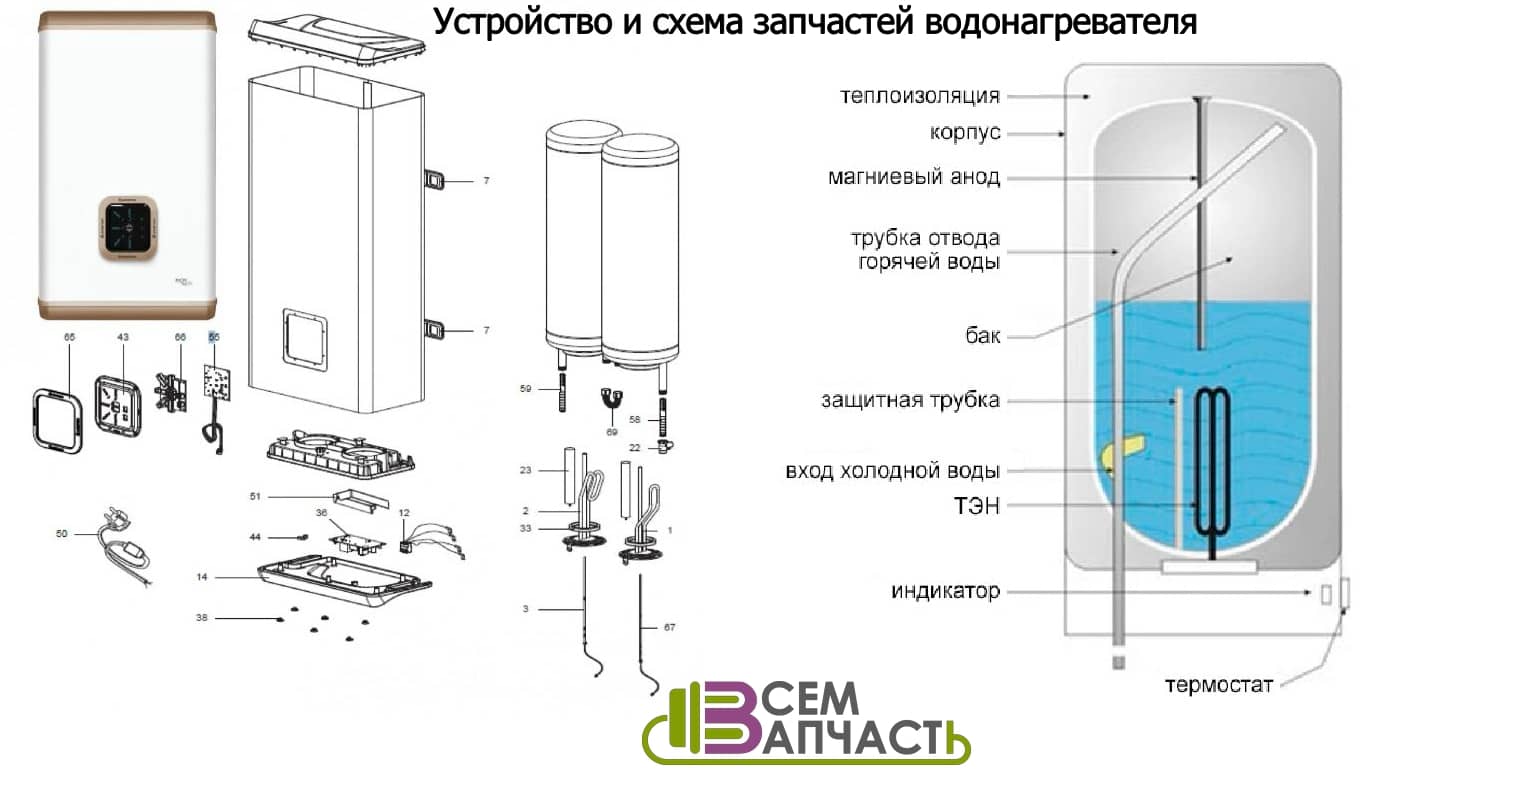 Первый запуск водонагревателя после установки, простоя или консервации